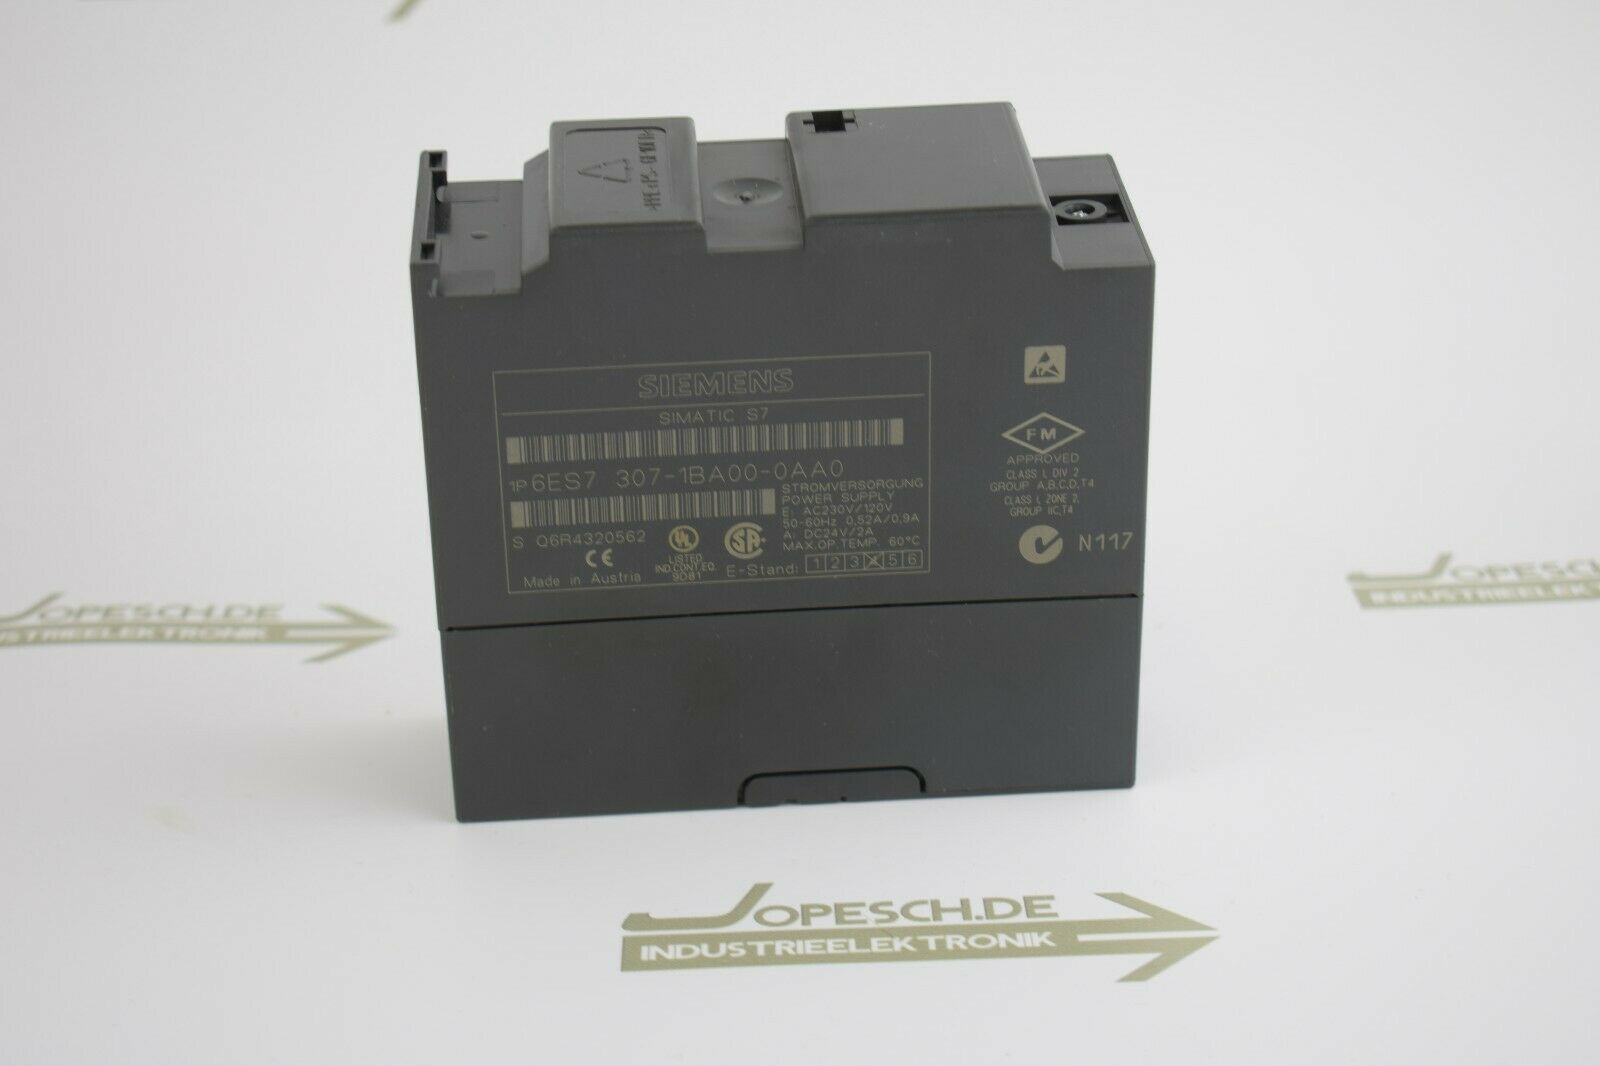 Siemens simatic S7-300 PS307 6ES7 307-1BA00-0AA0 ( 6ES7307-1BA00-0AA0 ) E4